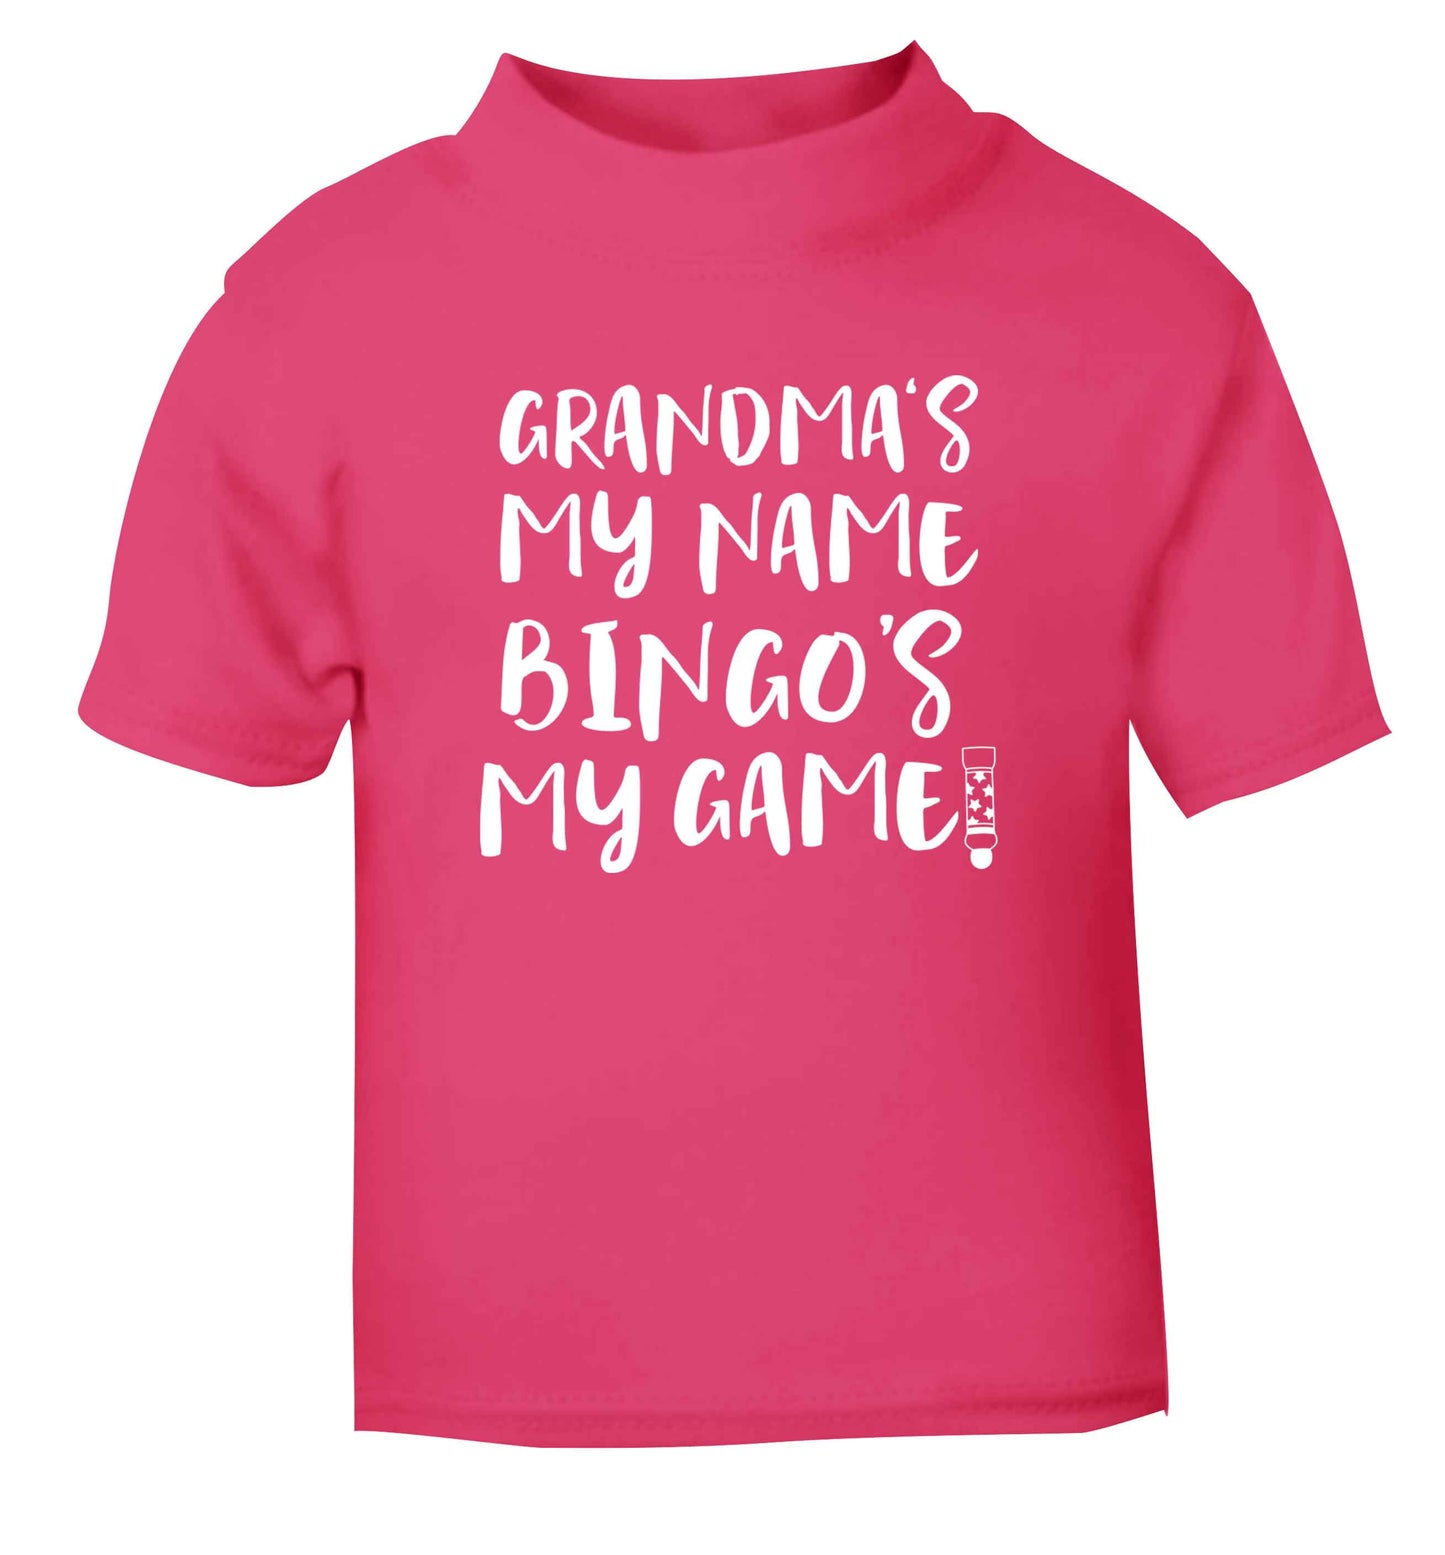 Grandma's my name bingo's my game! pink Baby Toddler Tshirt 2 Years